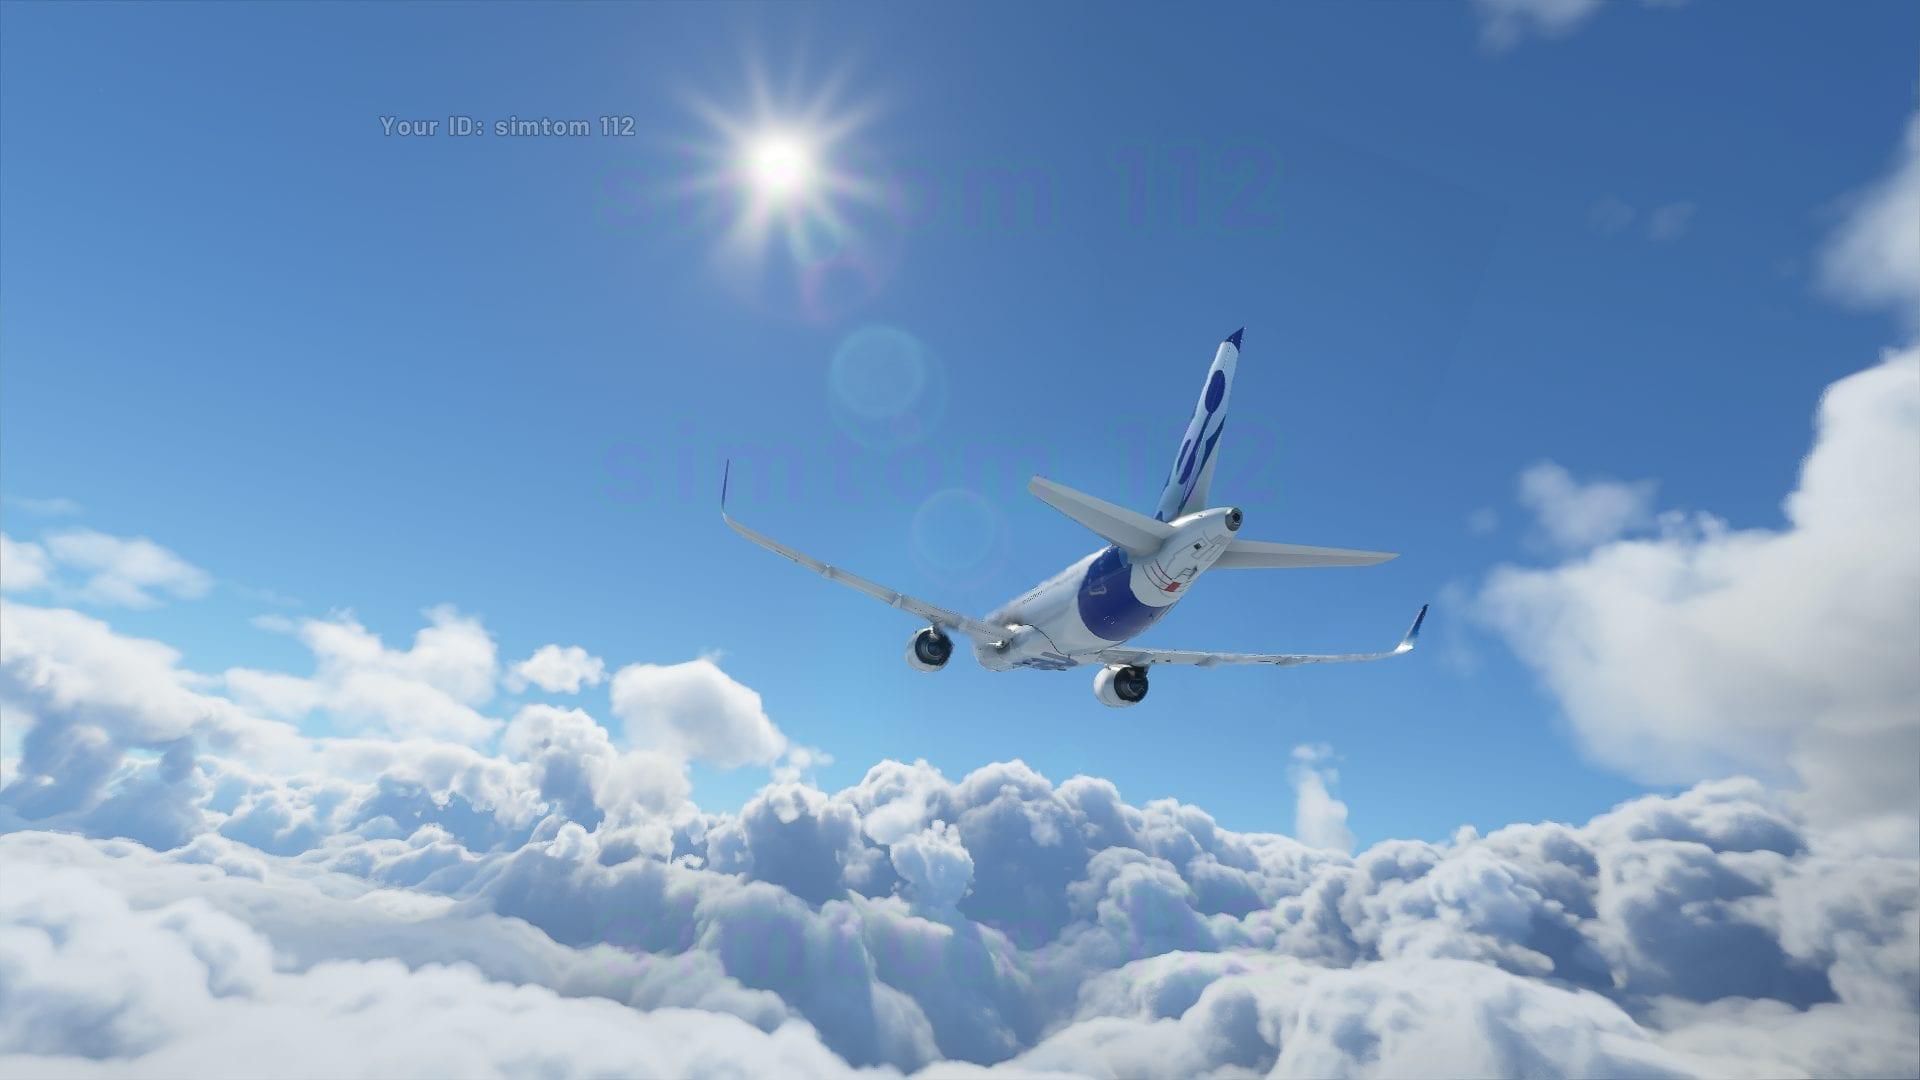 Microsoft flight simulator wallpaper - minering